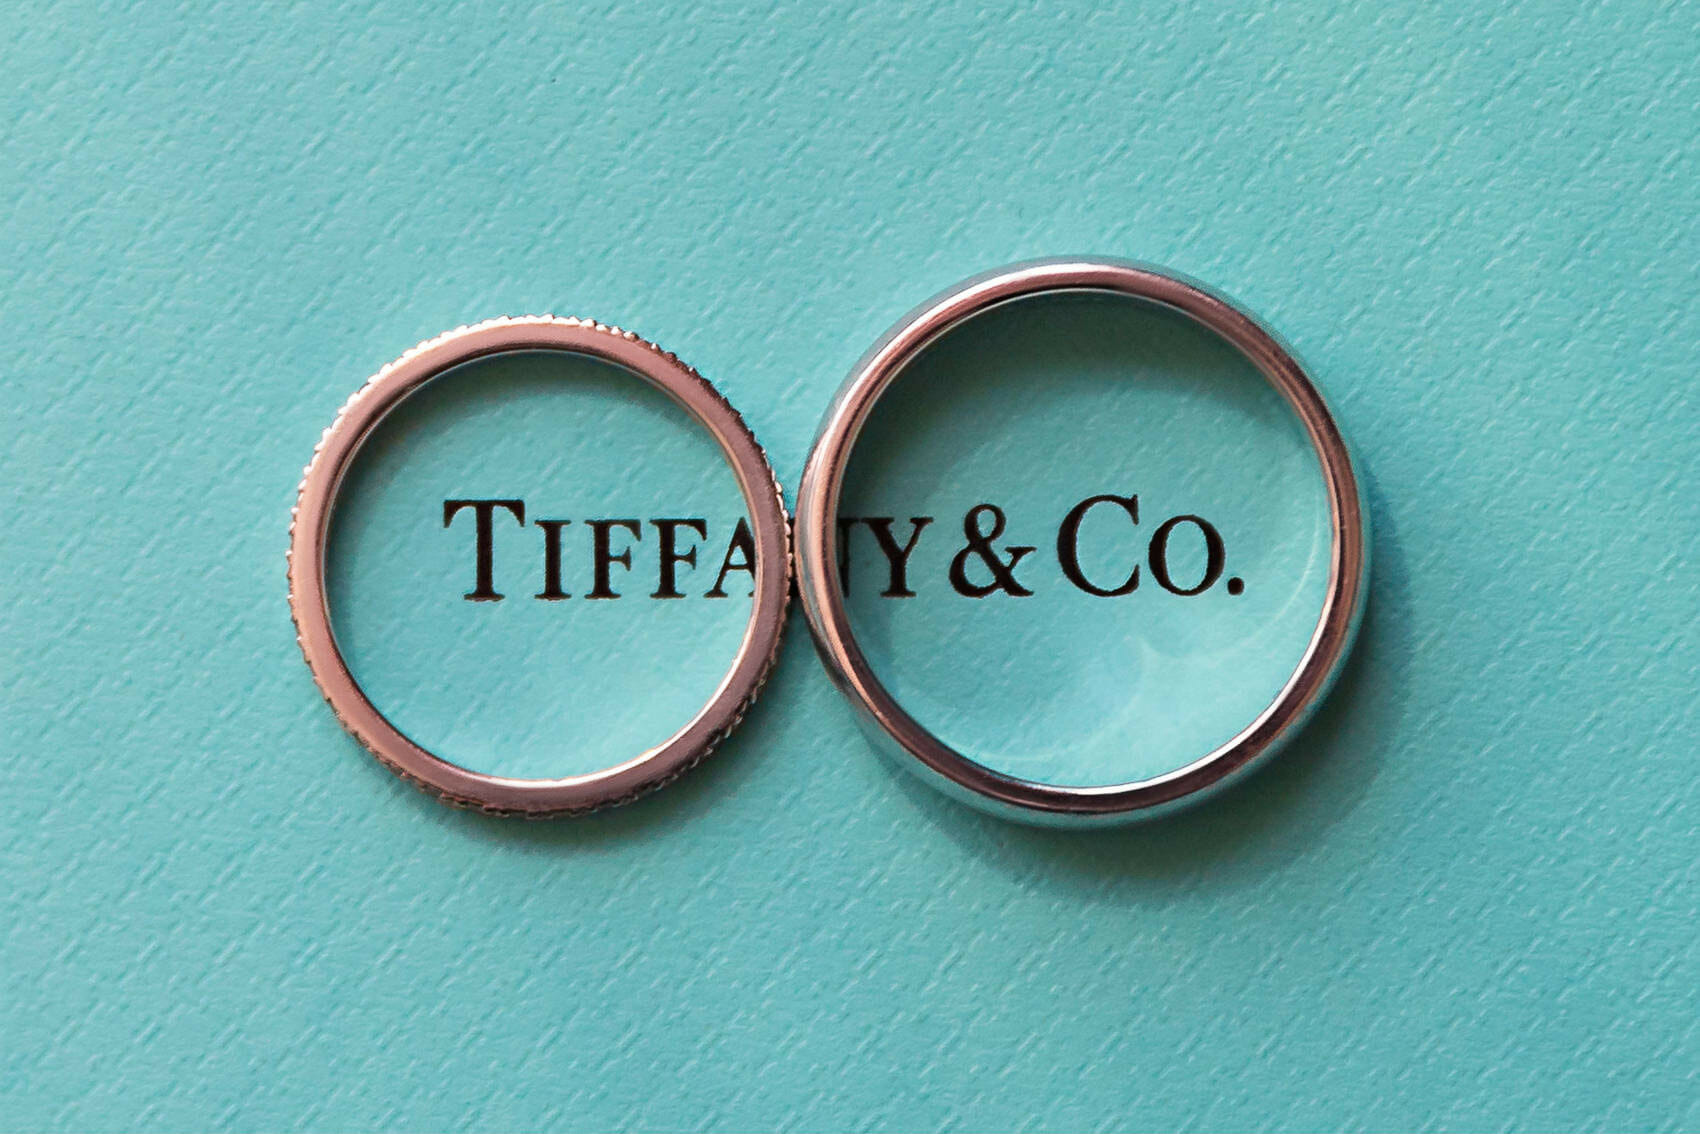 Luxury wedding rings by Tiffany & Co.